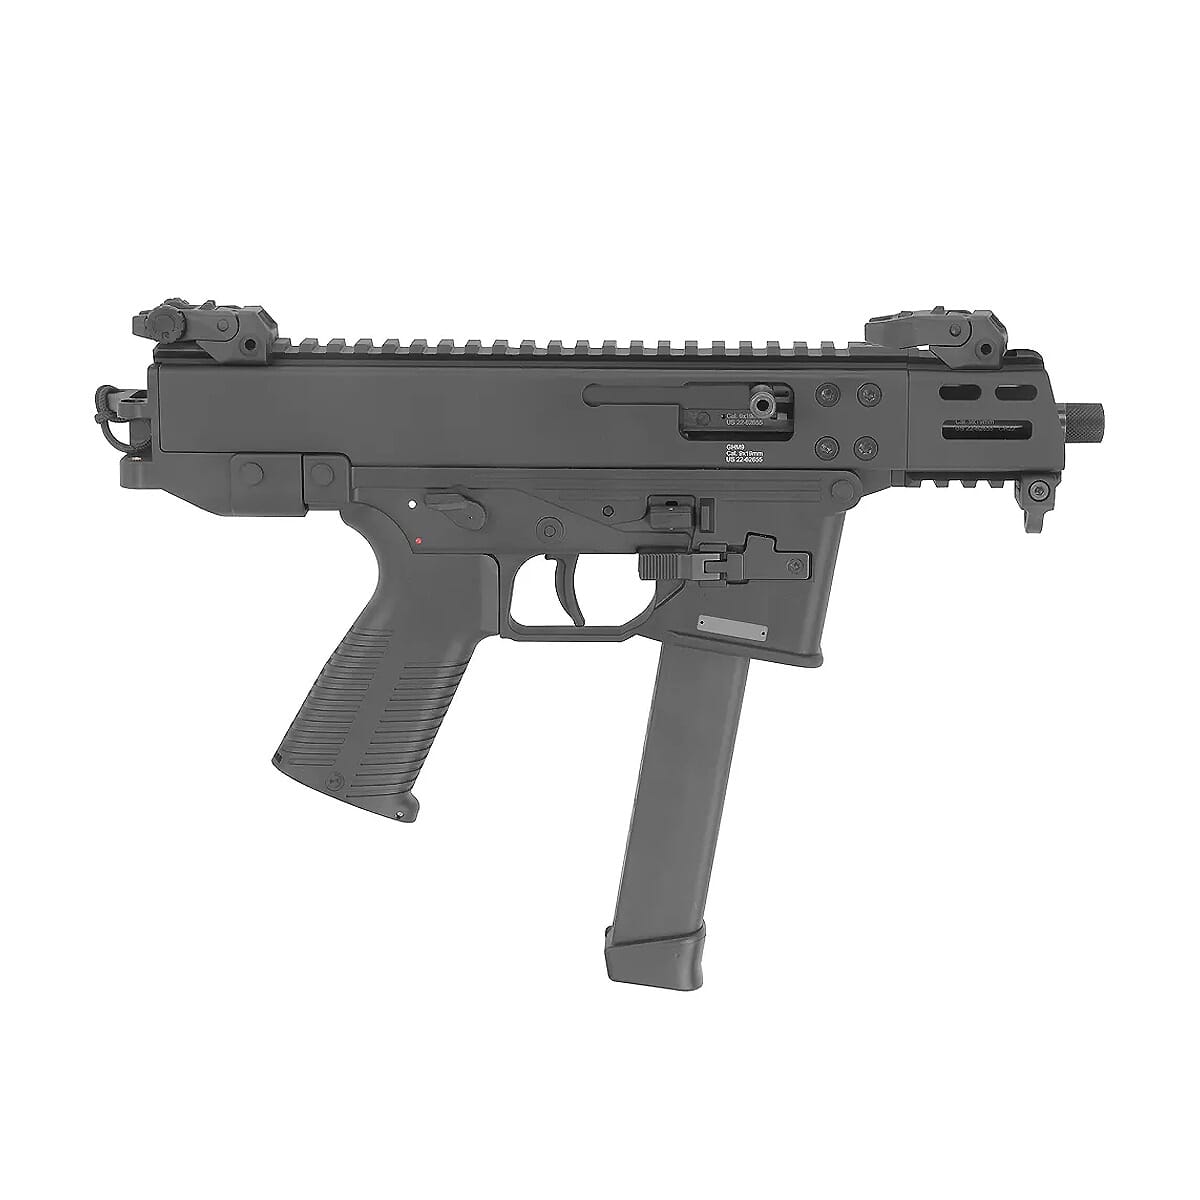 B&T GHM9 9mm Compact Pistol Gen2 w/Glock Lower BT-450008-G